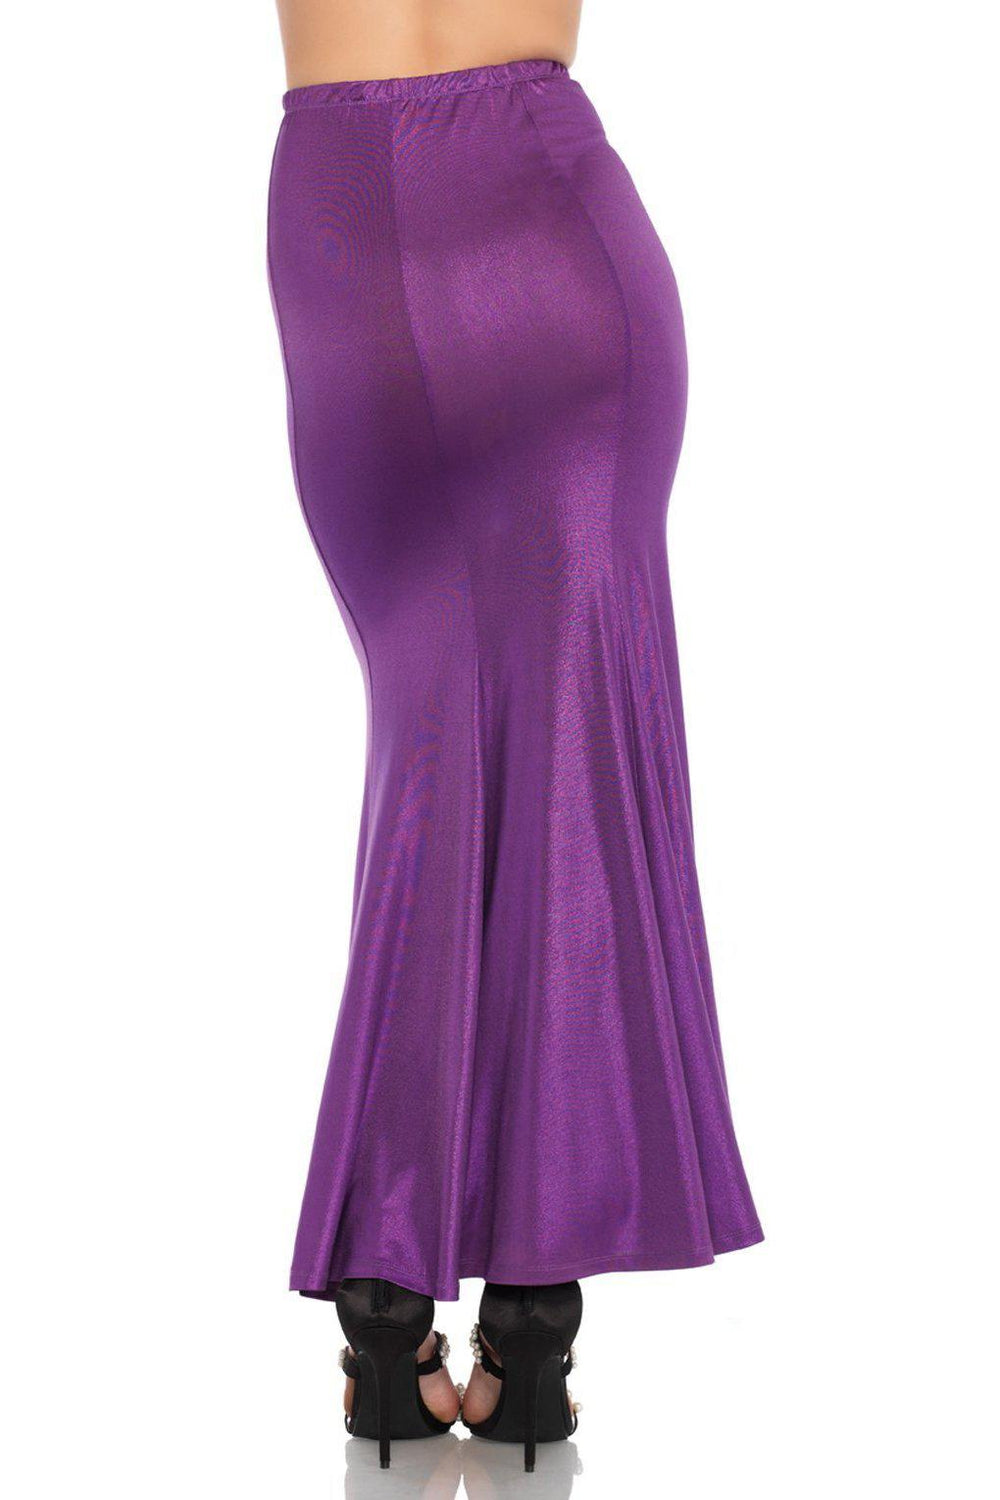 Shimmer Spandex Mermaid Skirt-Mermaid Costumes-Leg Avenue-SEXYSHOES.COM